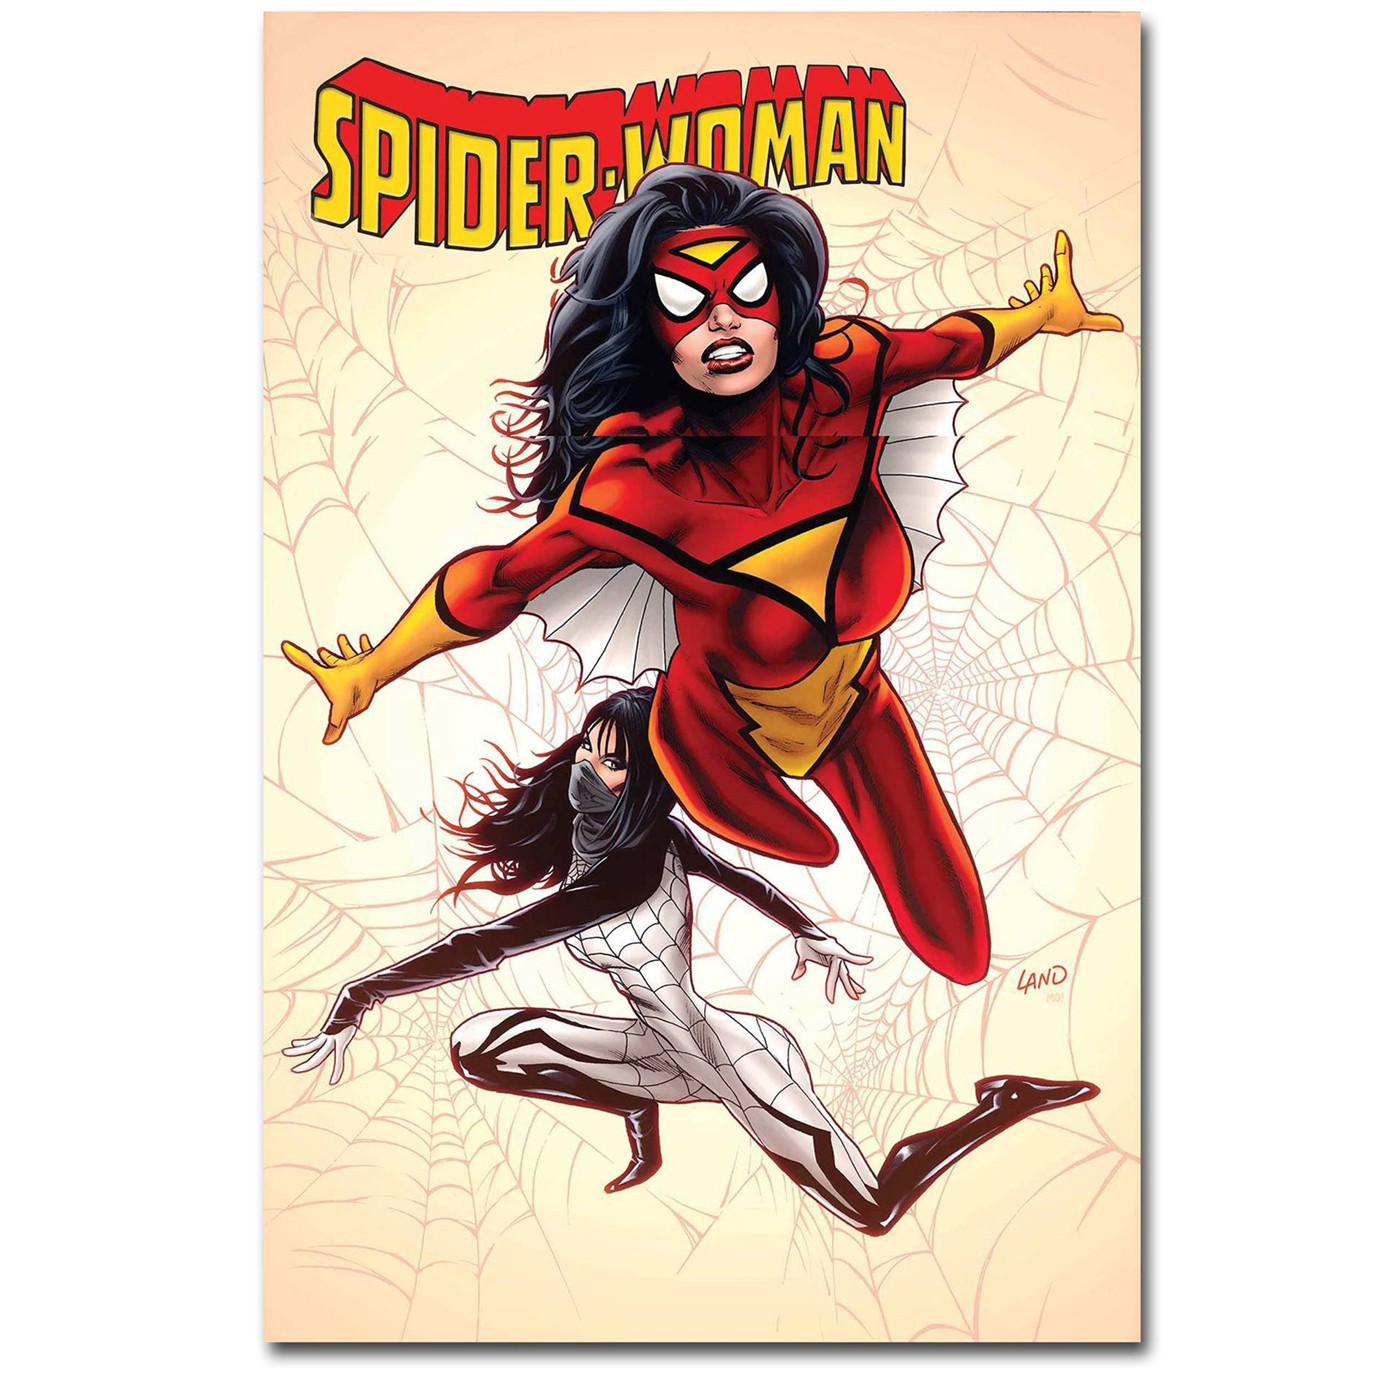 Spiderman Comic Book Binge Pack for September